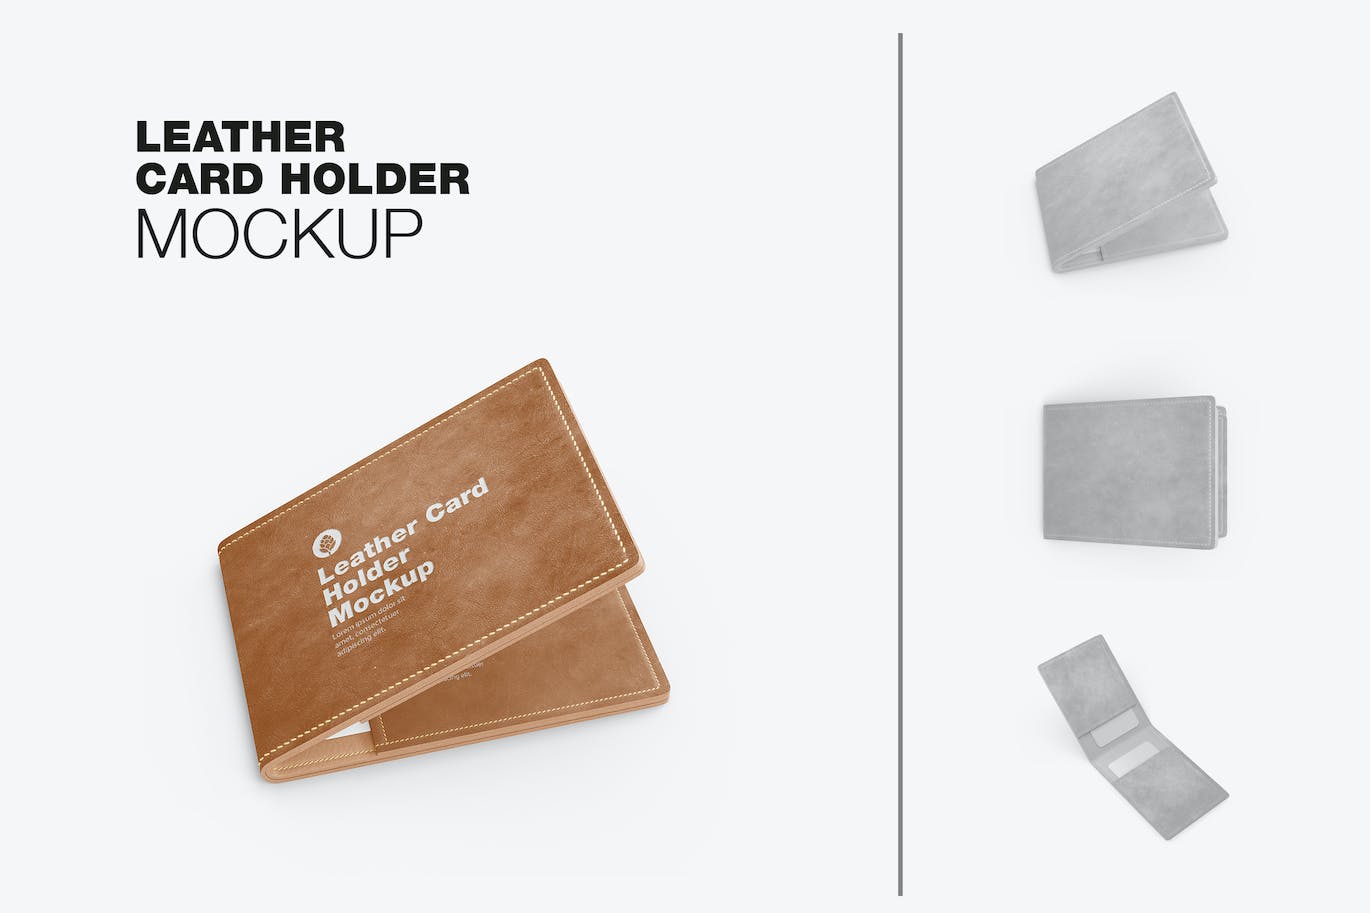 皮革卡片钱包夹设计样机模板 Leather Card Holder Mockup 样机素材 第1张